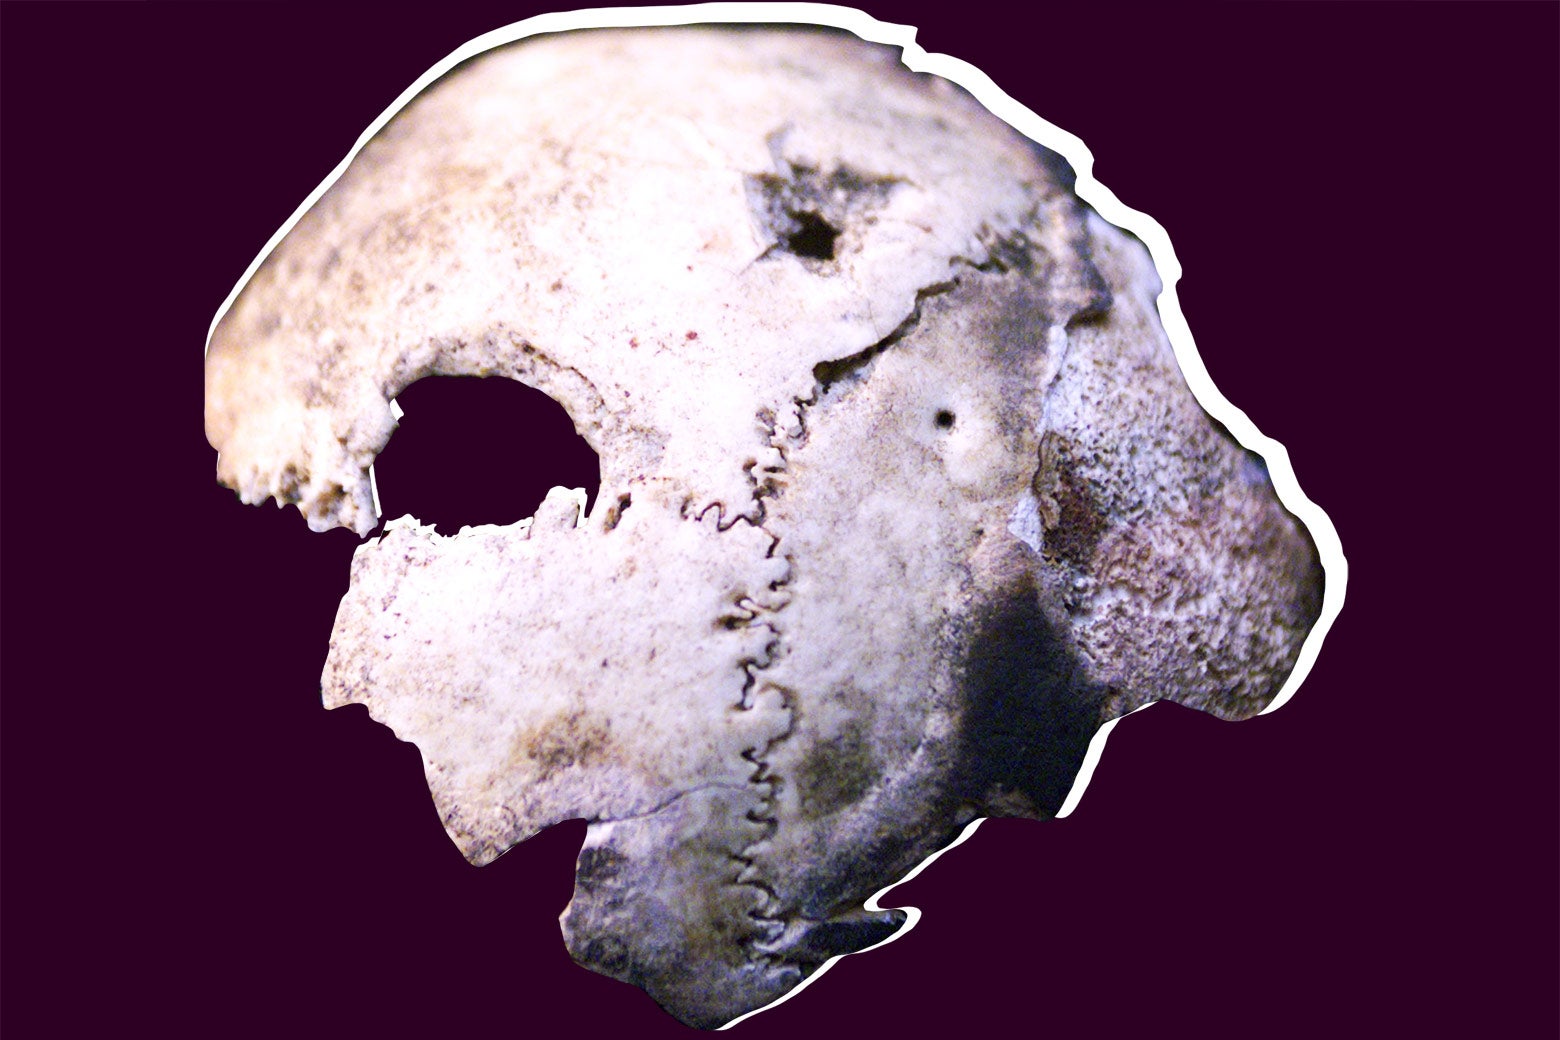 A skull fragment.